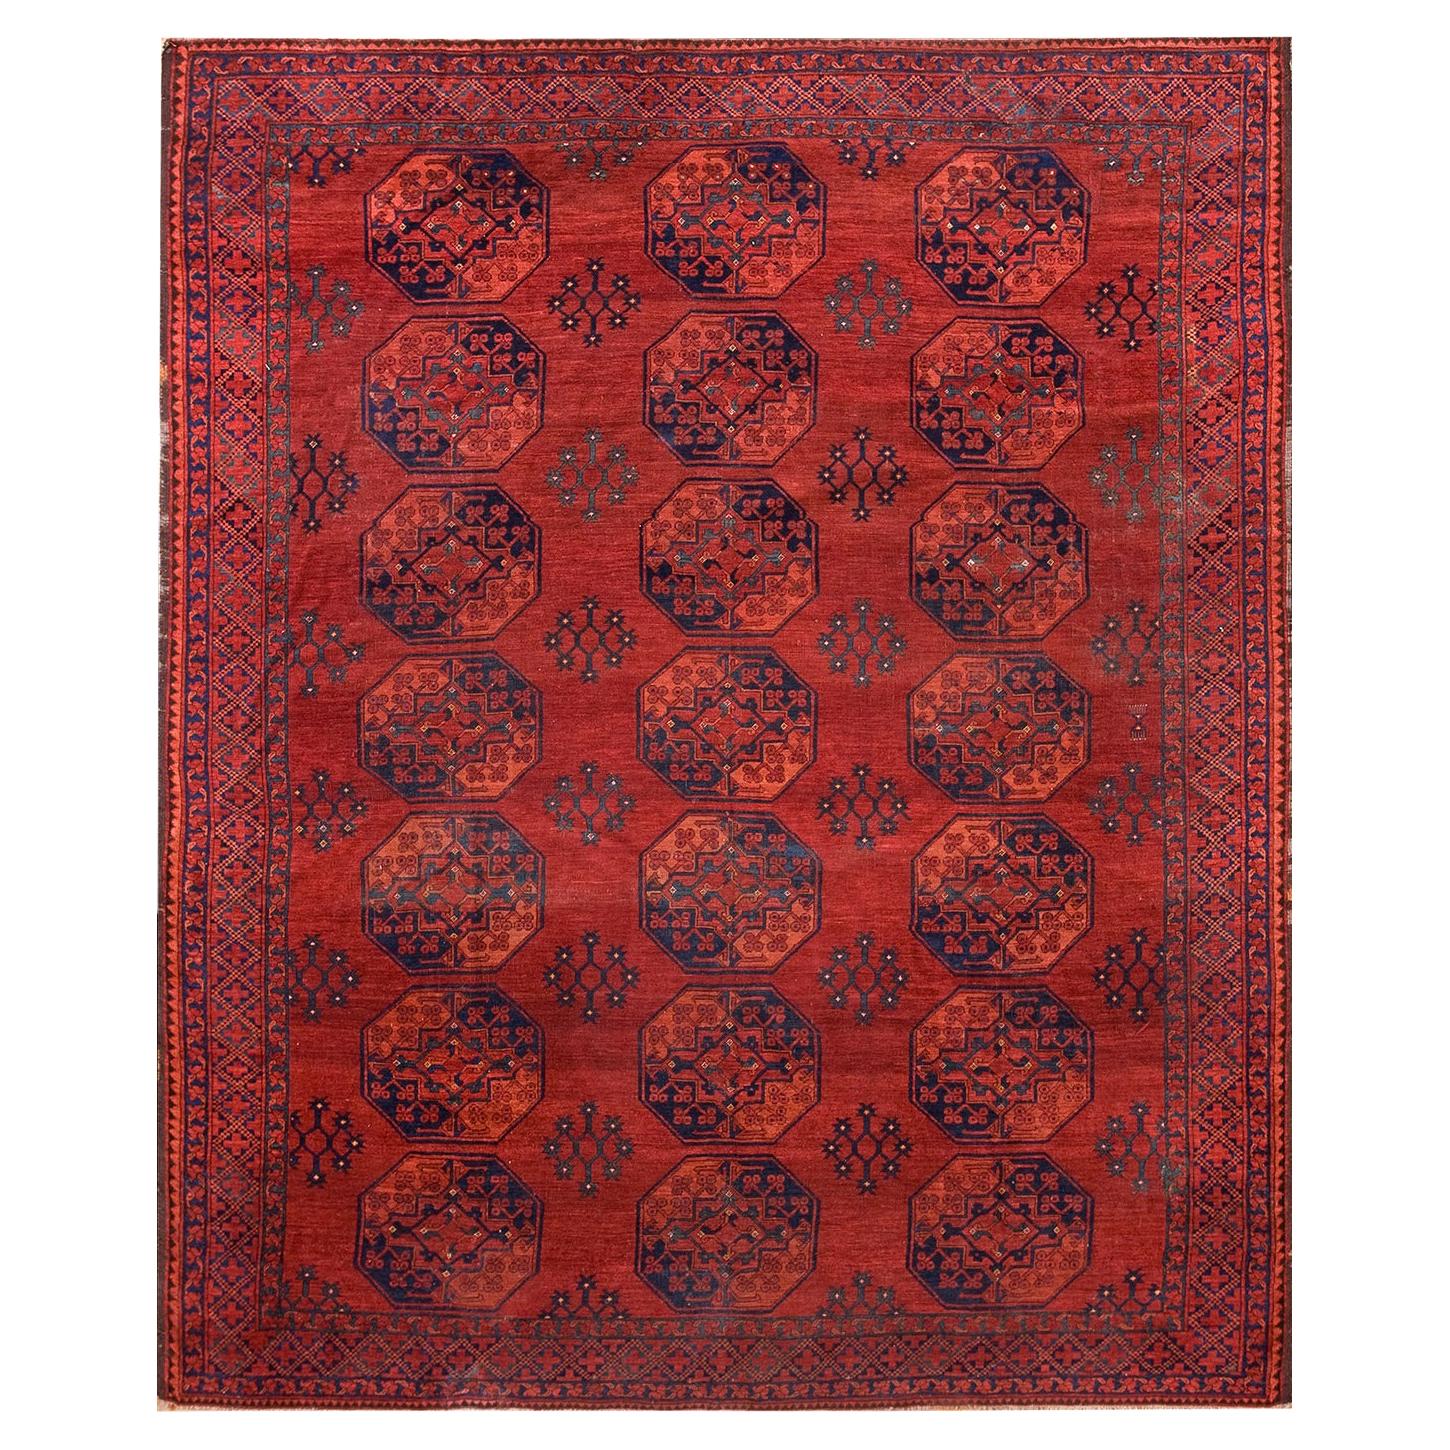 Beautiful vintage afghan tribal best mushvani wool runner rug  DISCOUNTED PRICE 2'11 x 6'2 Feet